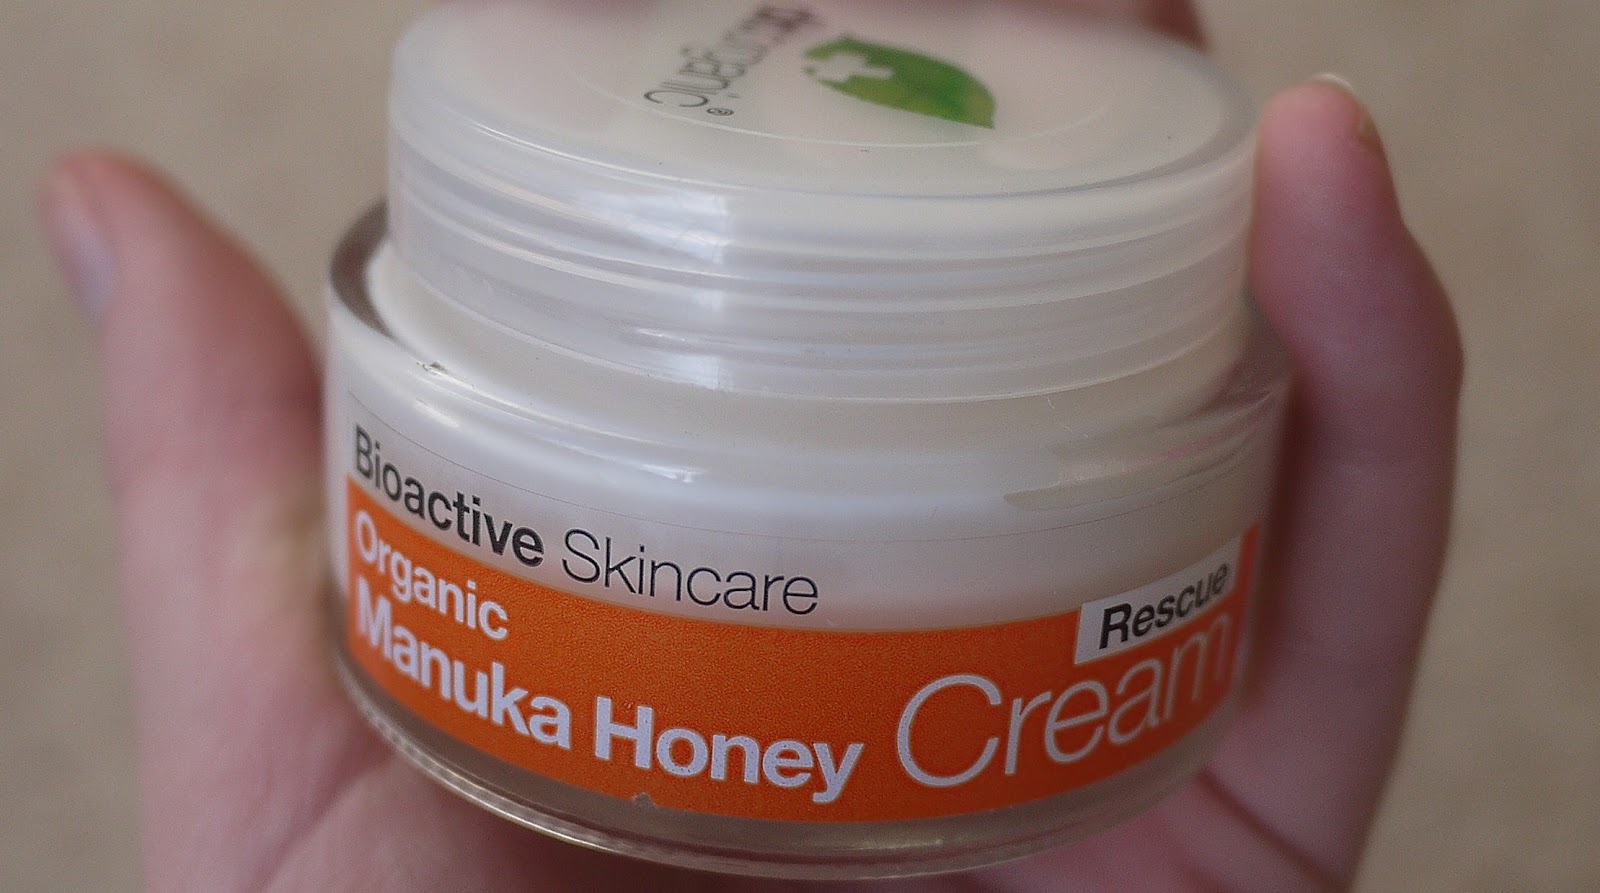 Dr Organics Manuka Honey Rescue Cream Review - Eye Eczema  